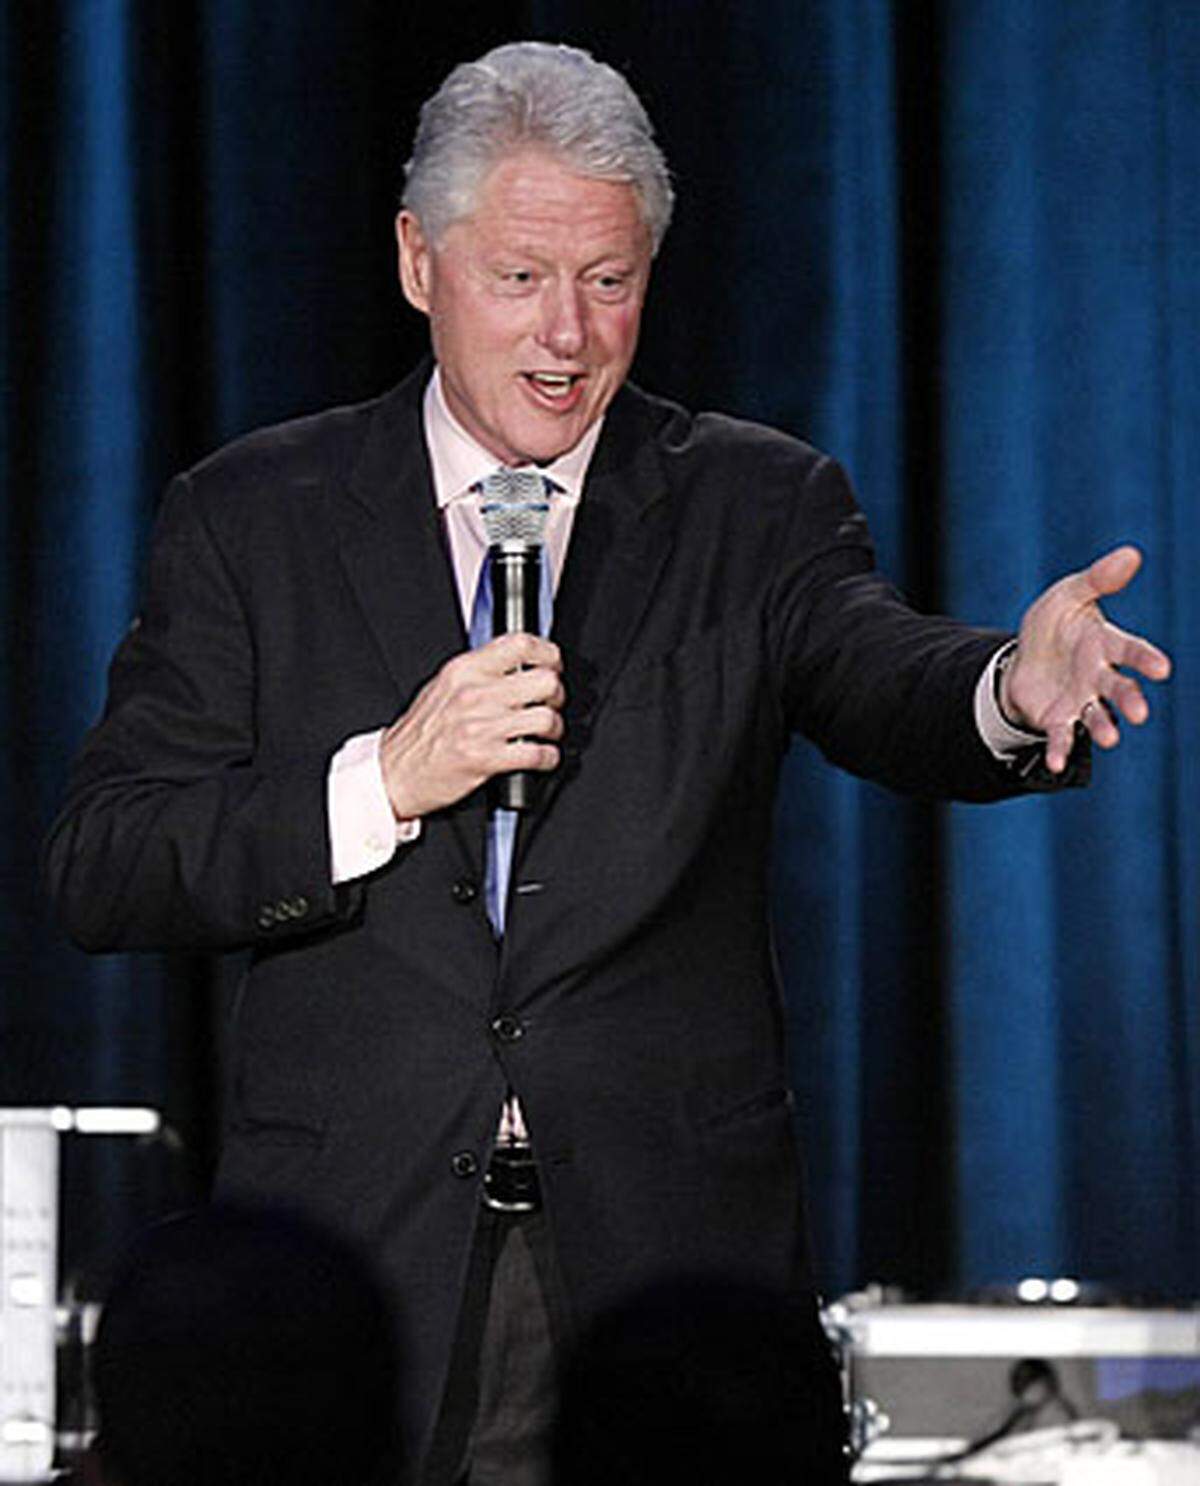 Präsidenten gehen auch zum Life Ball. Der prominenteste ist Ex-US-Präsident Bill Clinton. Er wird den ☞ „Crystal of Hope“-Preis überreichen und eine Ansprache halten. Danach reist er wieder ab. Bundespräsident Heinz Fischer bleibt dem Ball fern.